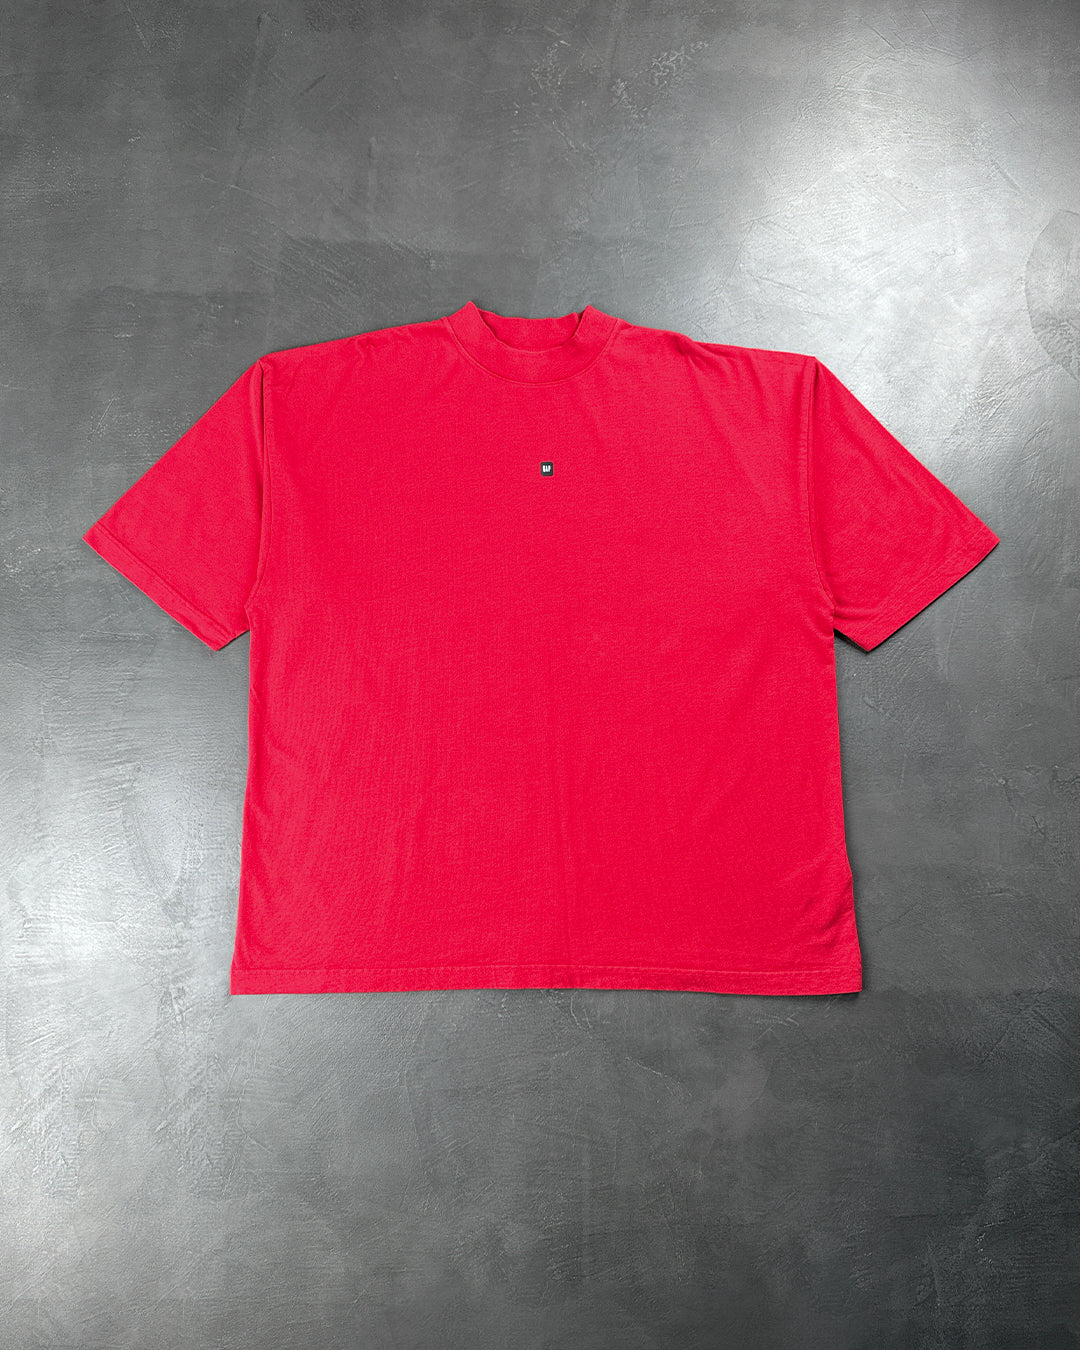 Yeezy Gap Engineered by Balenciaga Logo 3/4 Sleeve Tee Red